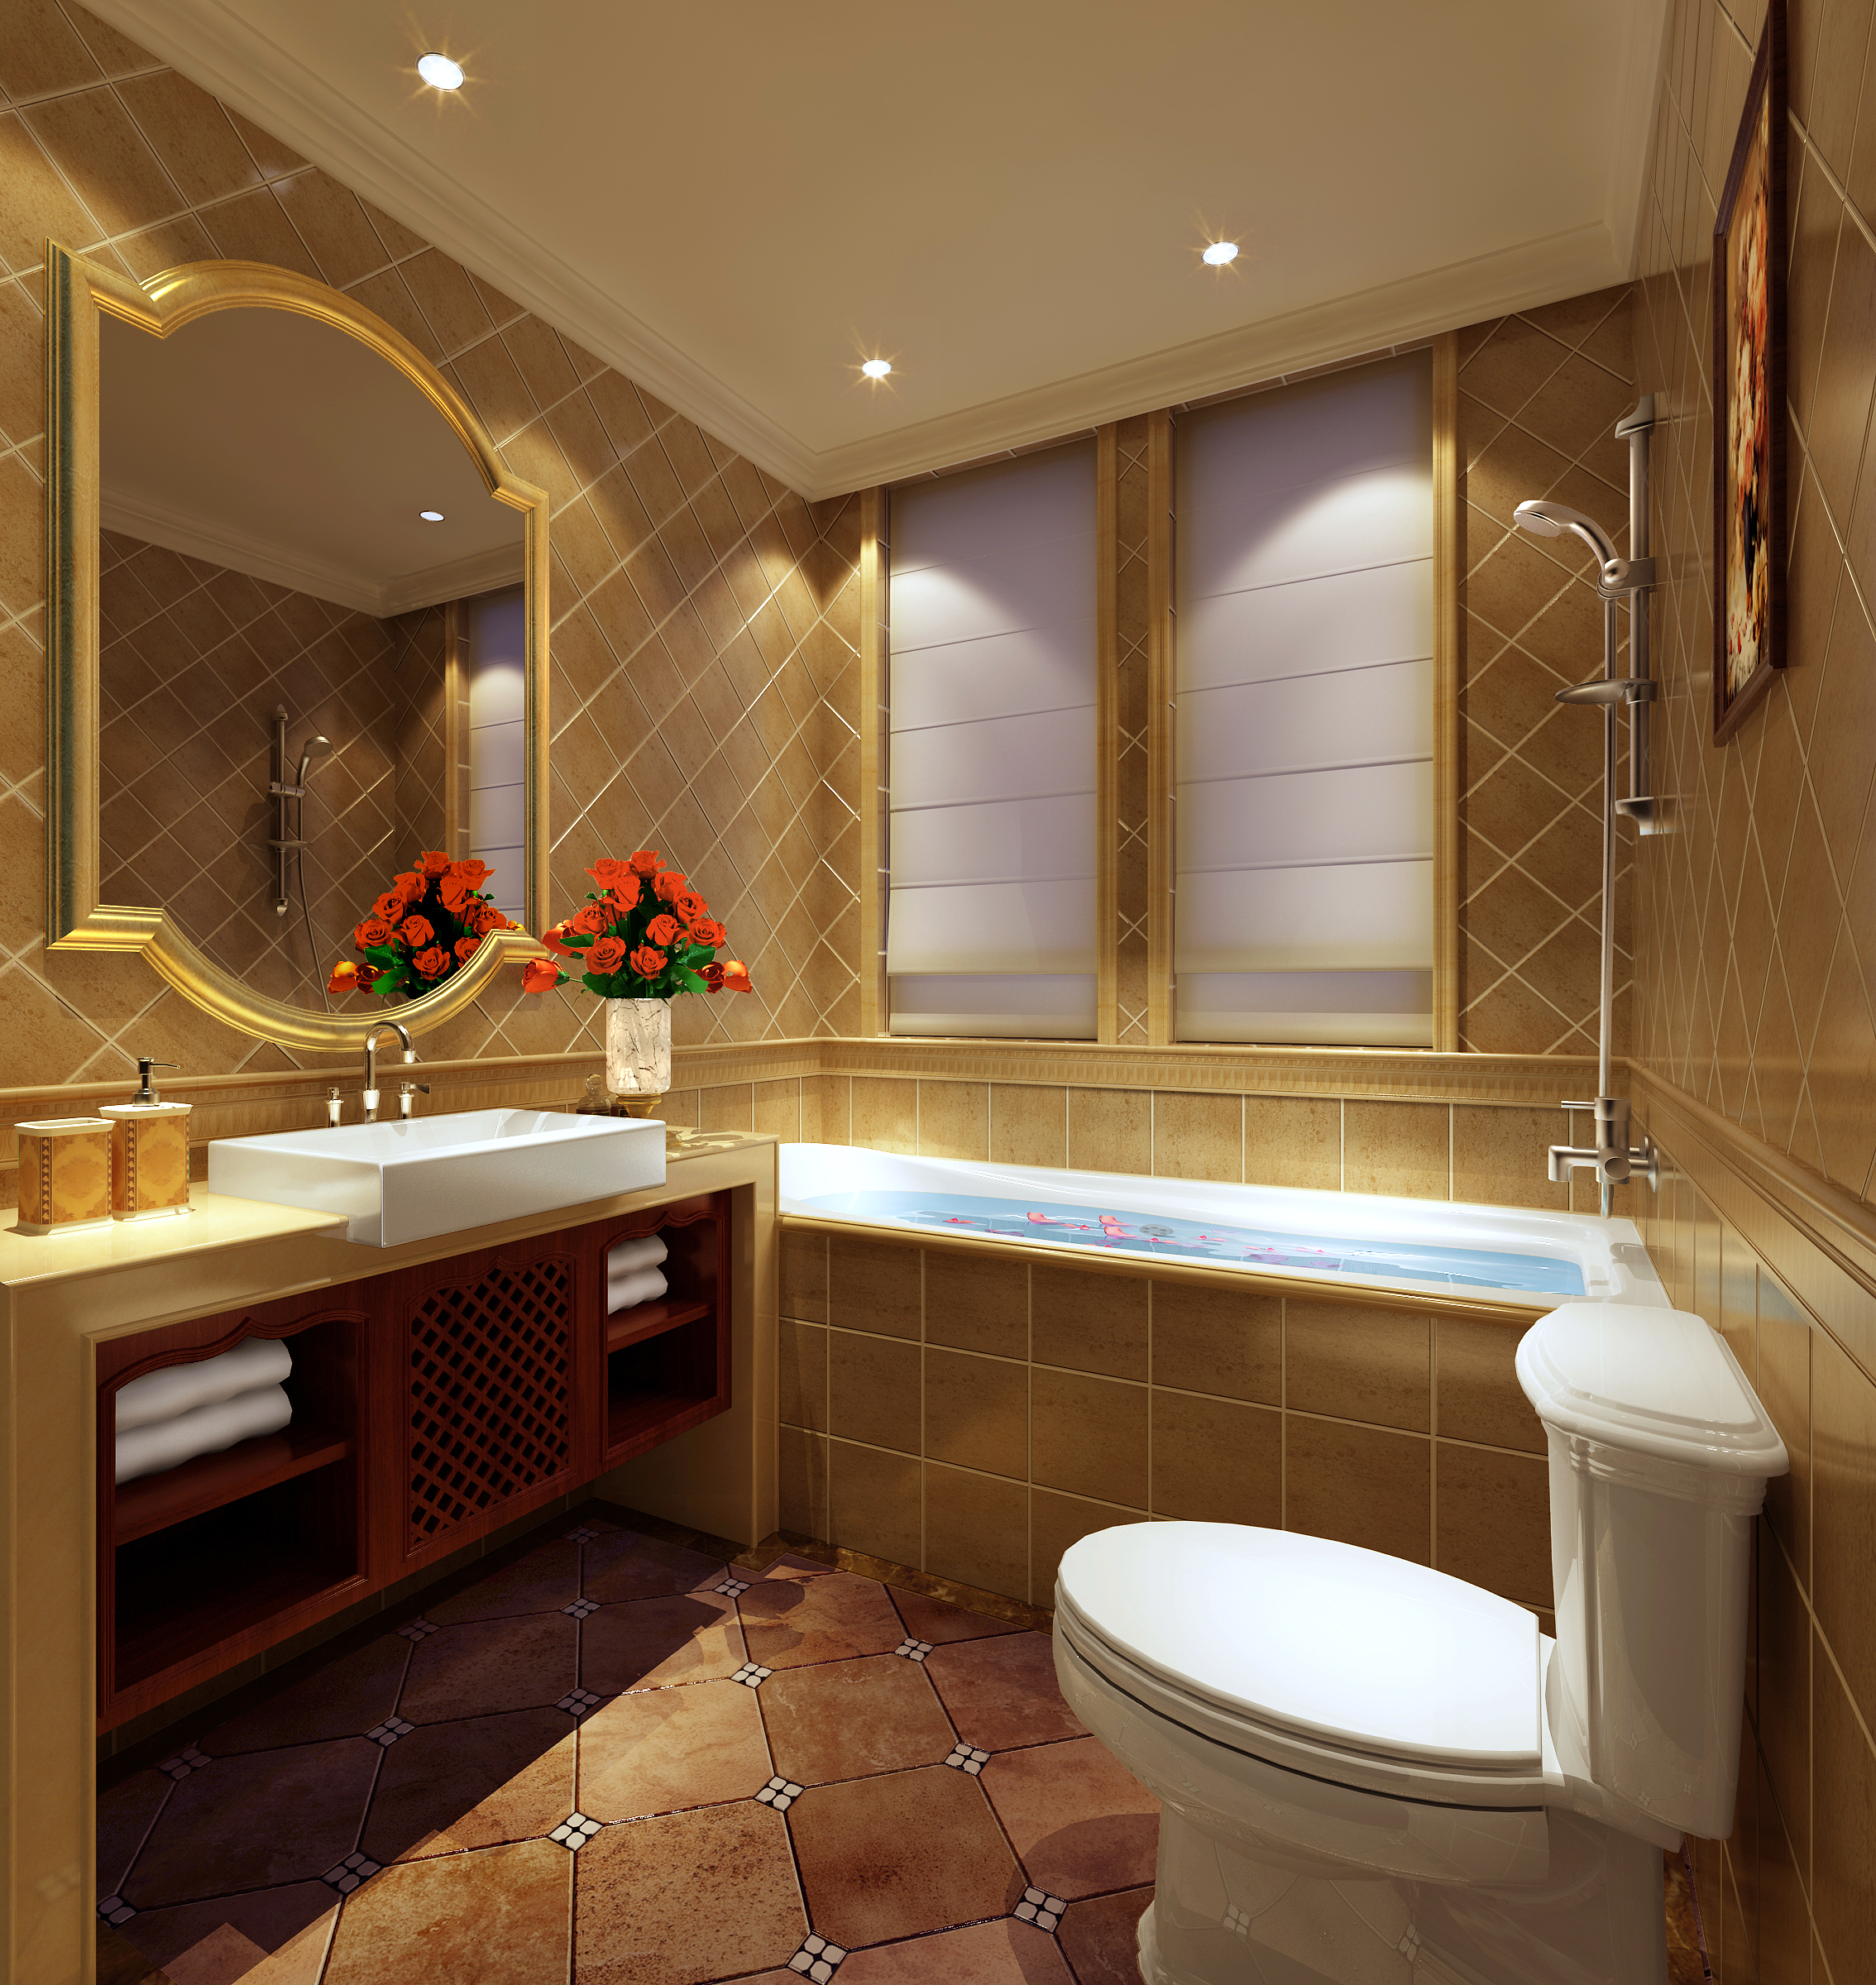 别墅 中式 卫生间图片来自石俊全在中式--给人庄重与优雅的双重感受的分享